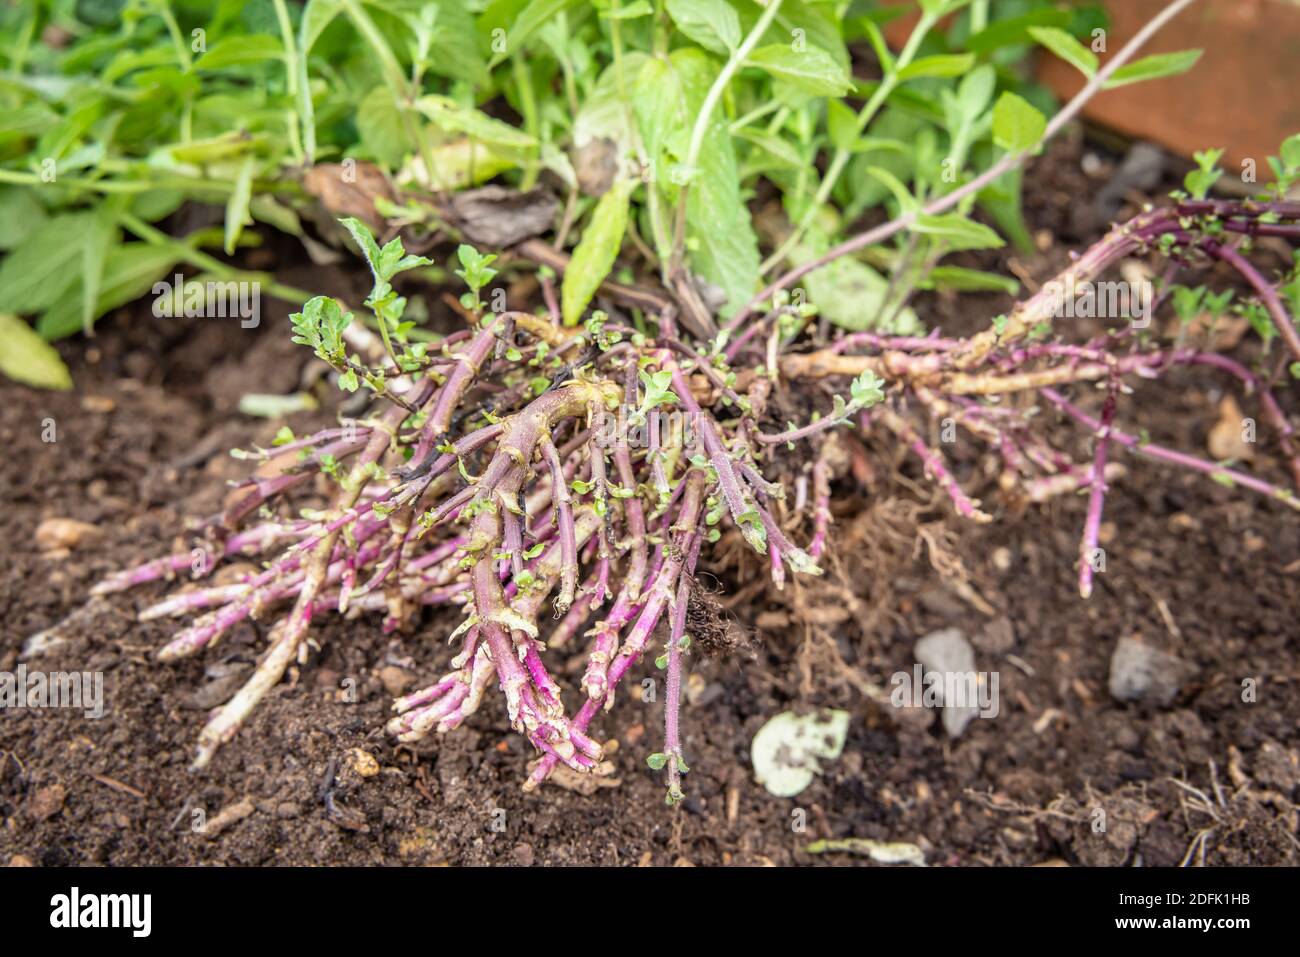 Rizomi, pianta di menta (mentha) con foglie e rizomi o radici che crescono in un giardino, Regno Unito Foto Stock